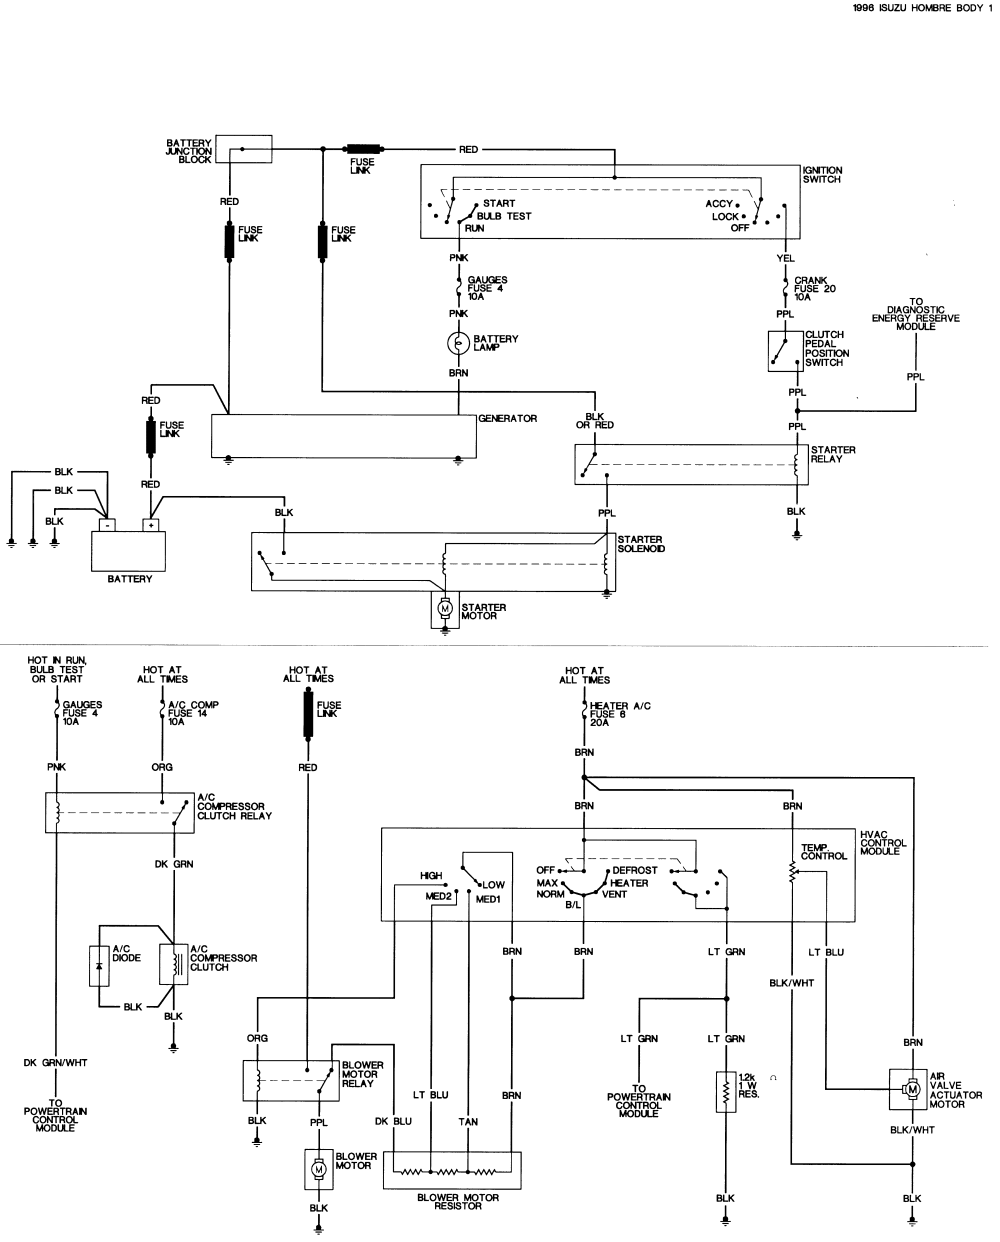 1986 Camry Wiring Diagram System - Wiring Diagram Schema